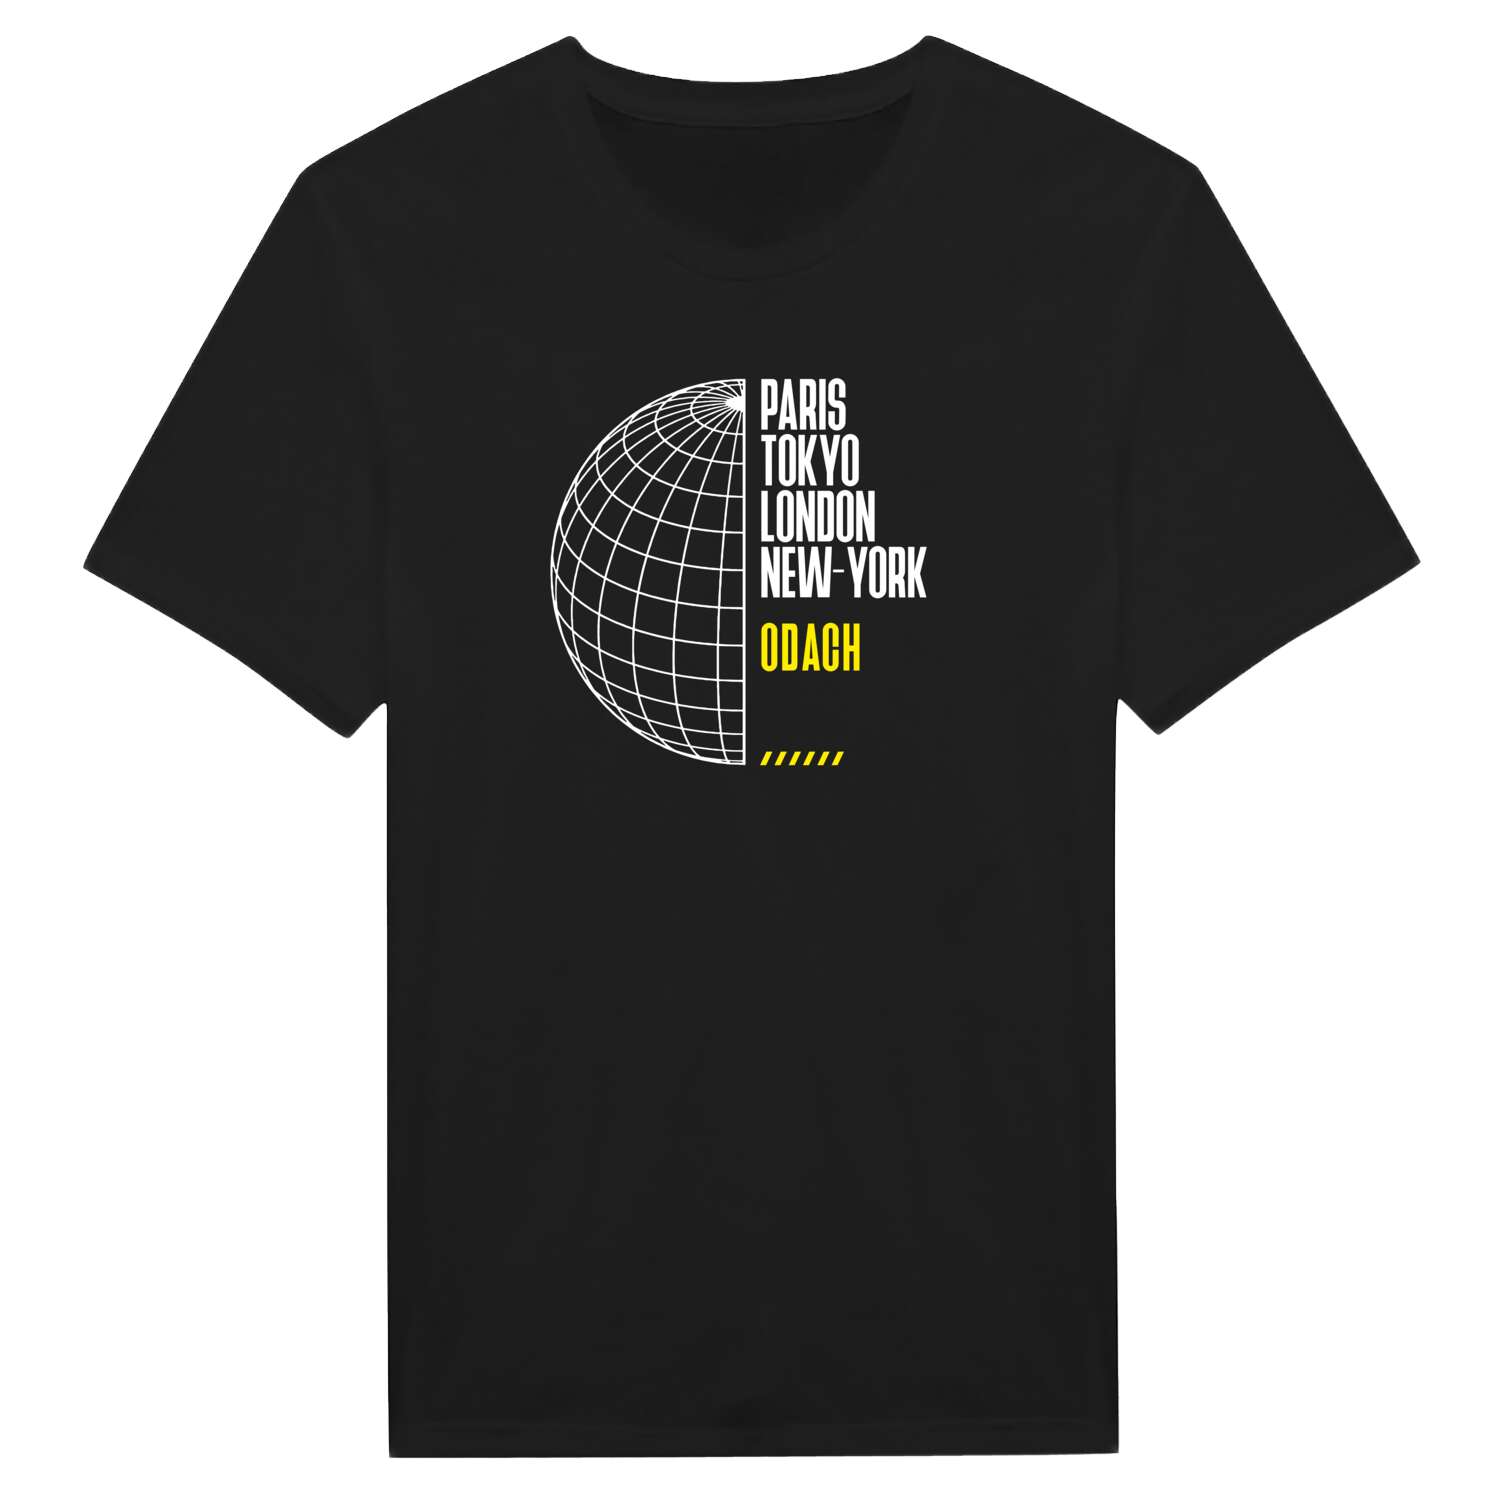 Odach T-Shirt »Paris Tokyo London«